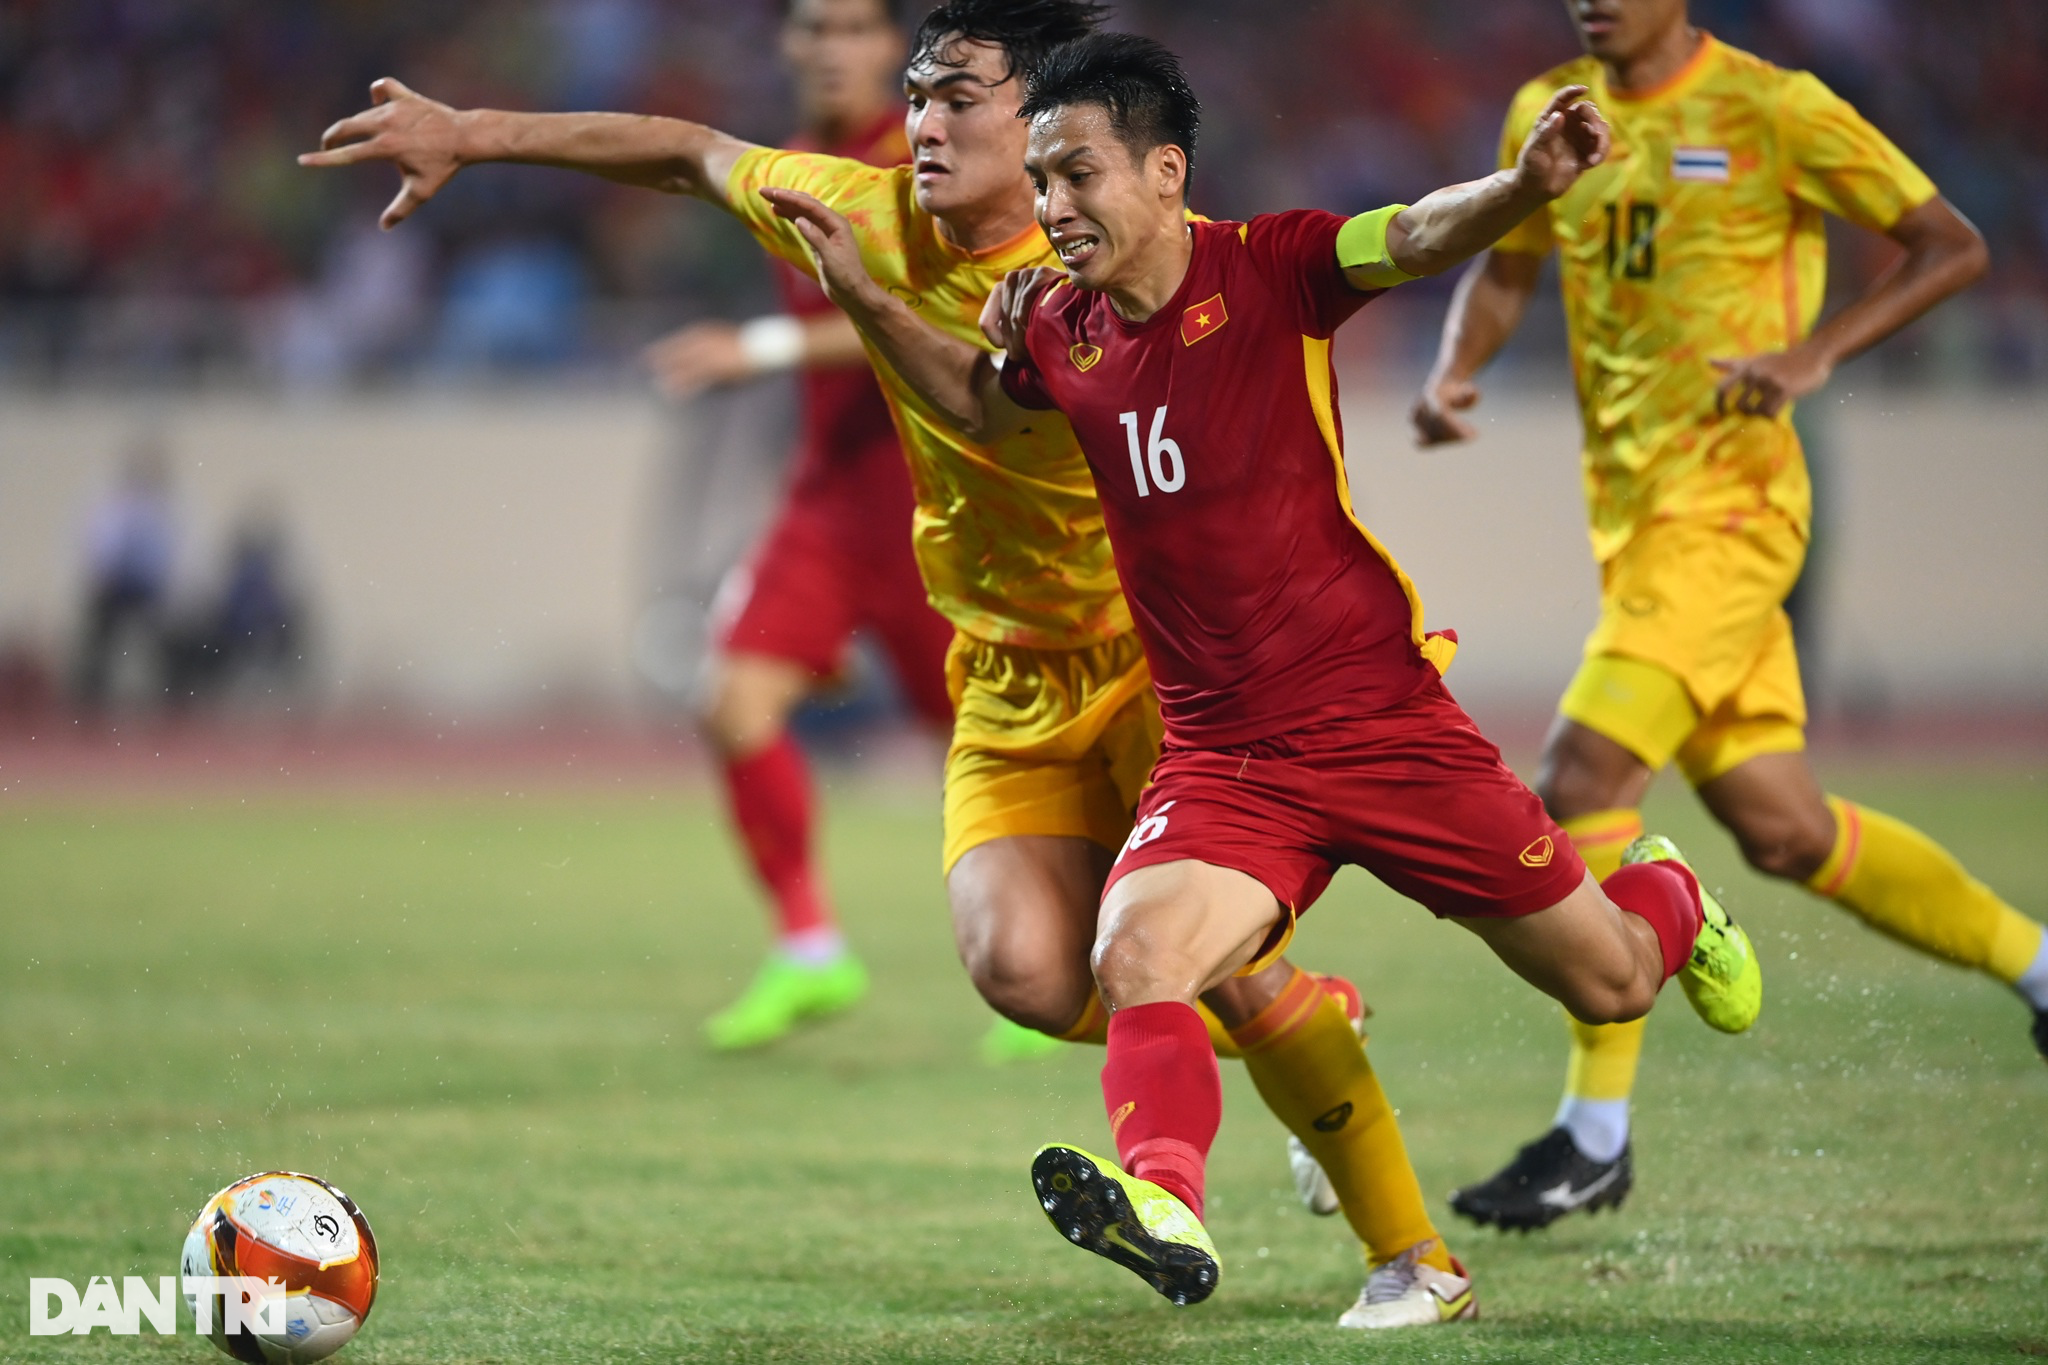 U23 Việt Nam vs U23 Thái Lan: Trận chiến kinh điển giữa U23 Việt Nam và U23 Thái Lan sẽ đem đến những cảm xúc sôi động và kịch tính cho người hâm mộ bóng đá cả hai nước. Ai sẽ chiến thắng và vươn lên đỉnh cao? Hãy cùng chờ đợi và đón xem.